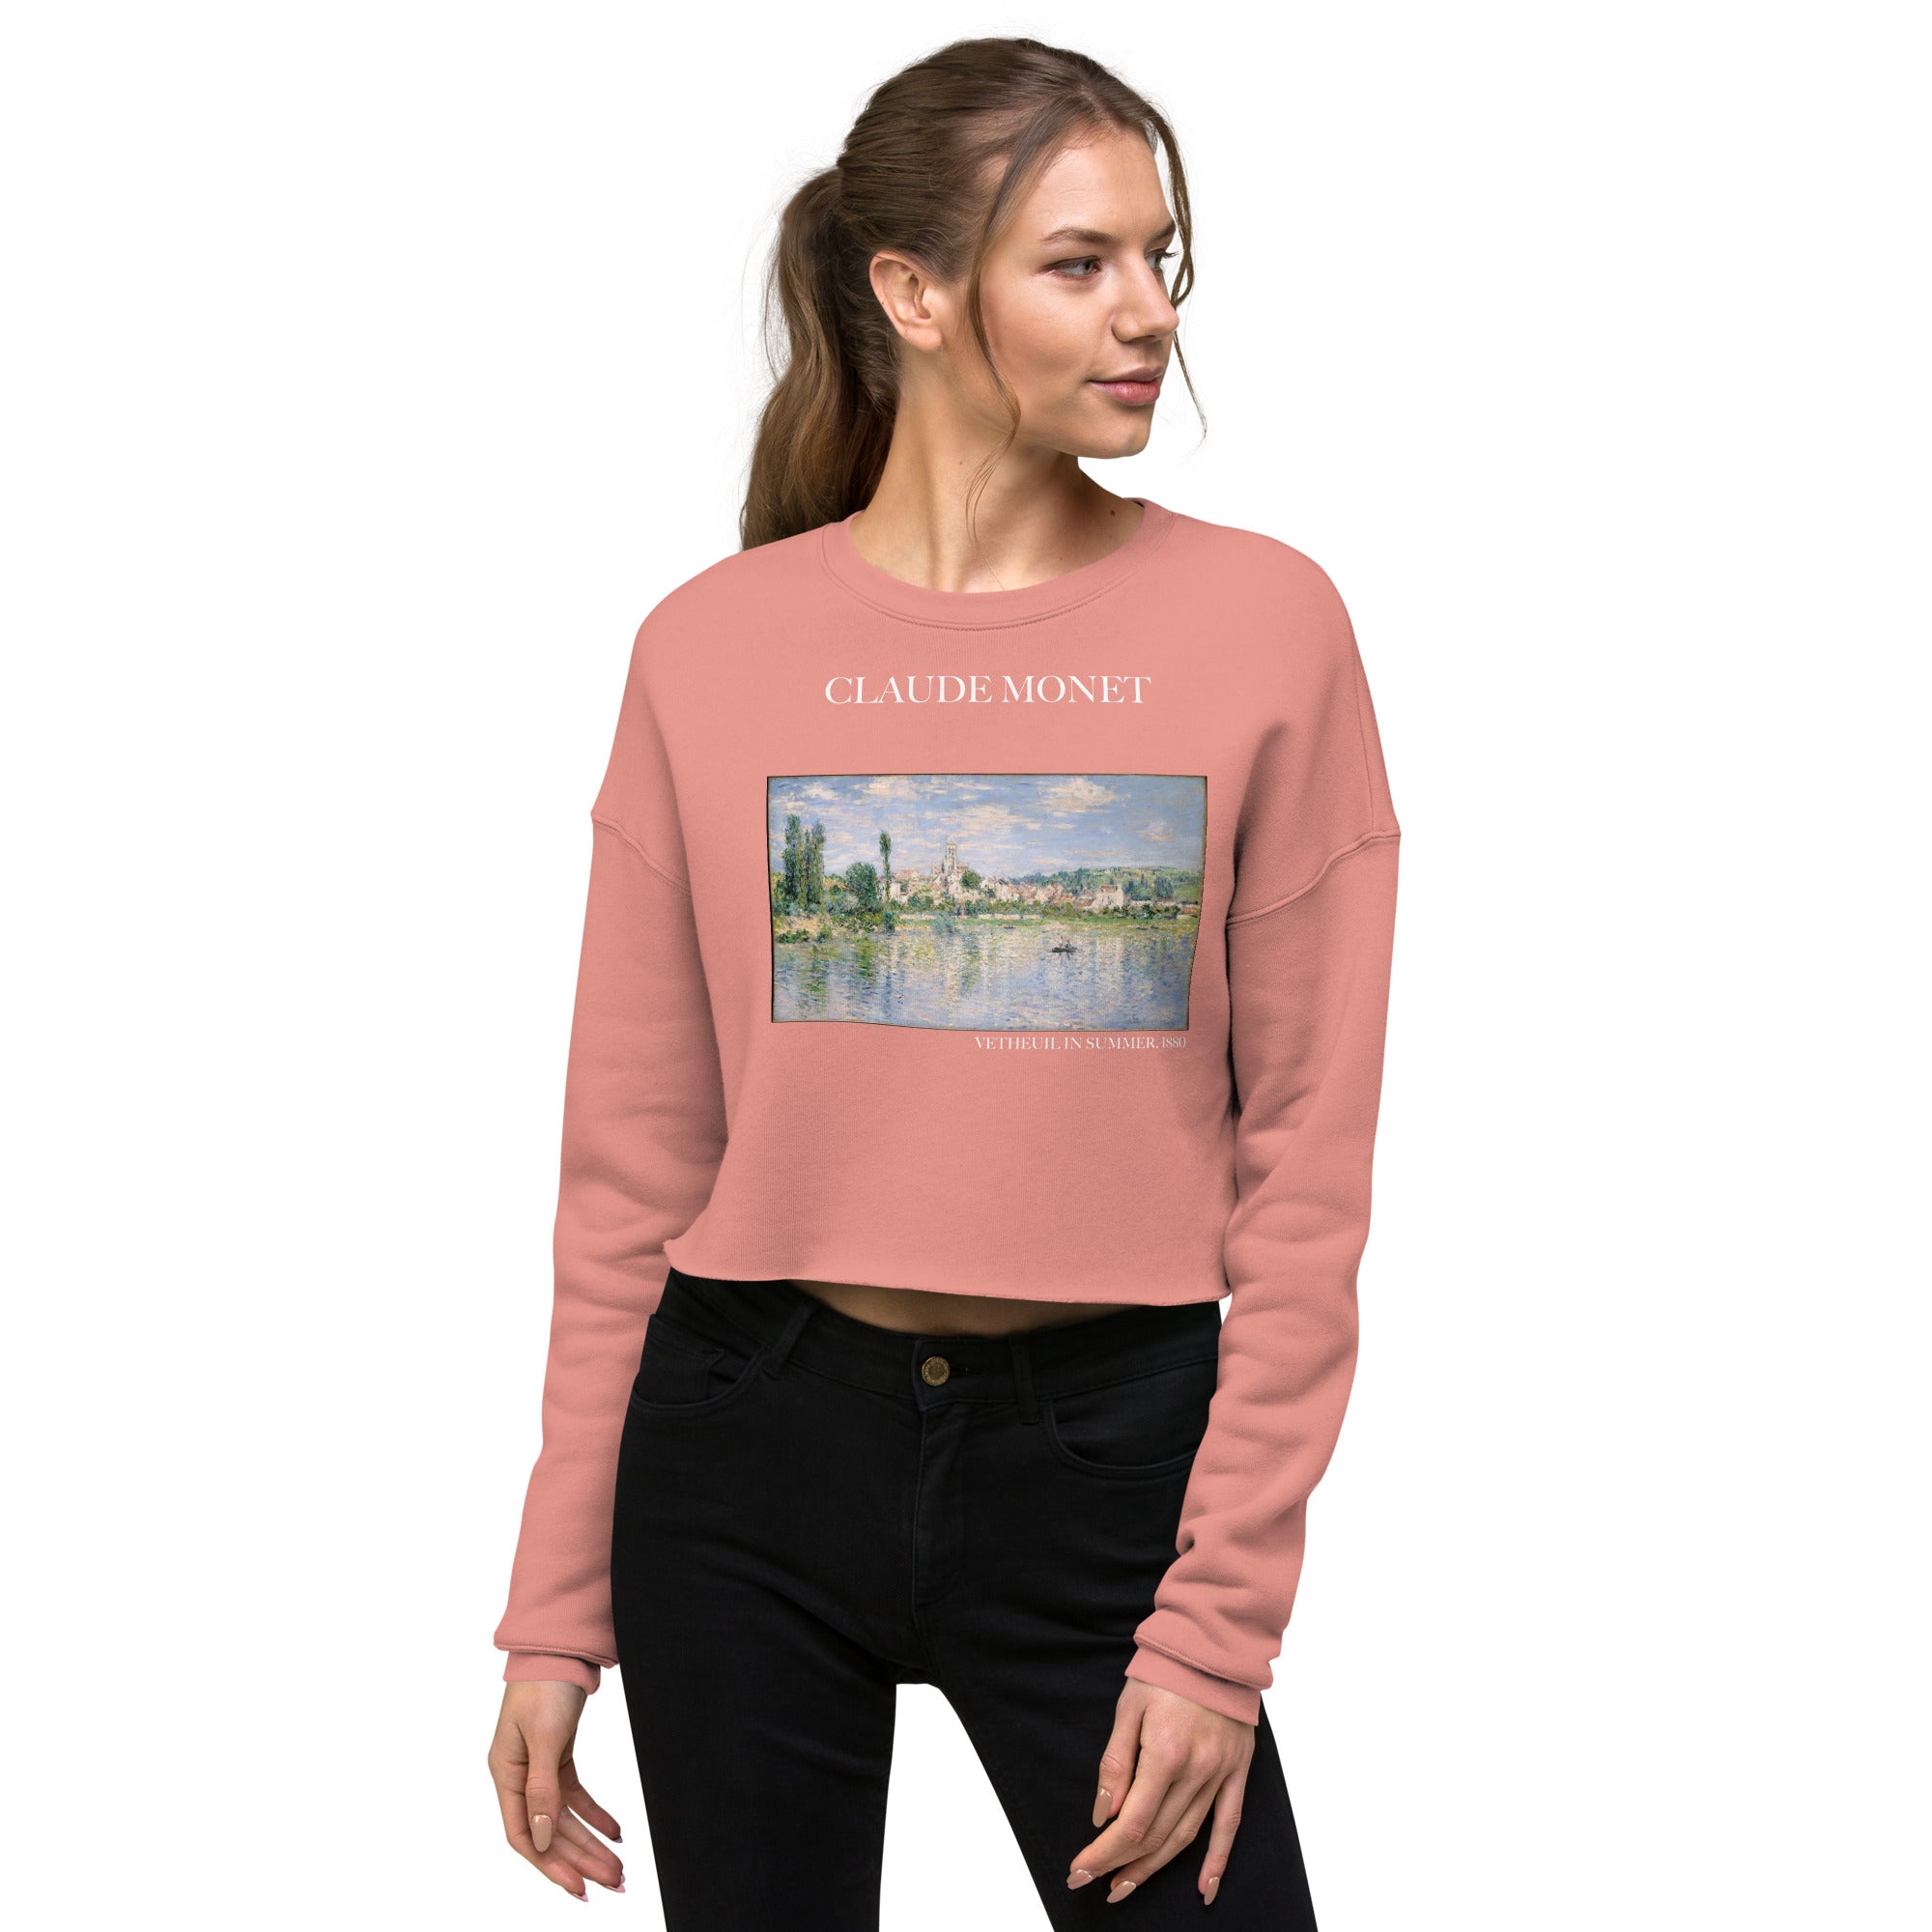 Claude Monet „Vetheuil im Sommer“ Berühmtes Gemälde Kurzes Sweatshirt | Premium Art Kurzes Sweatshirt